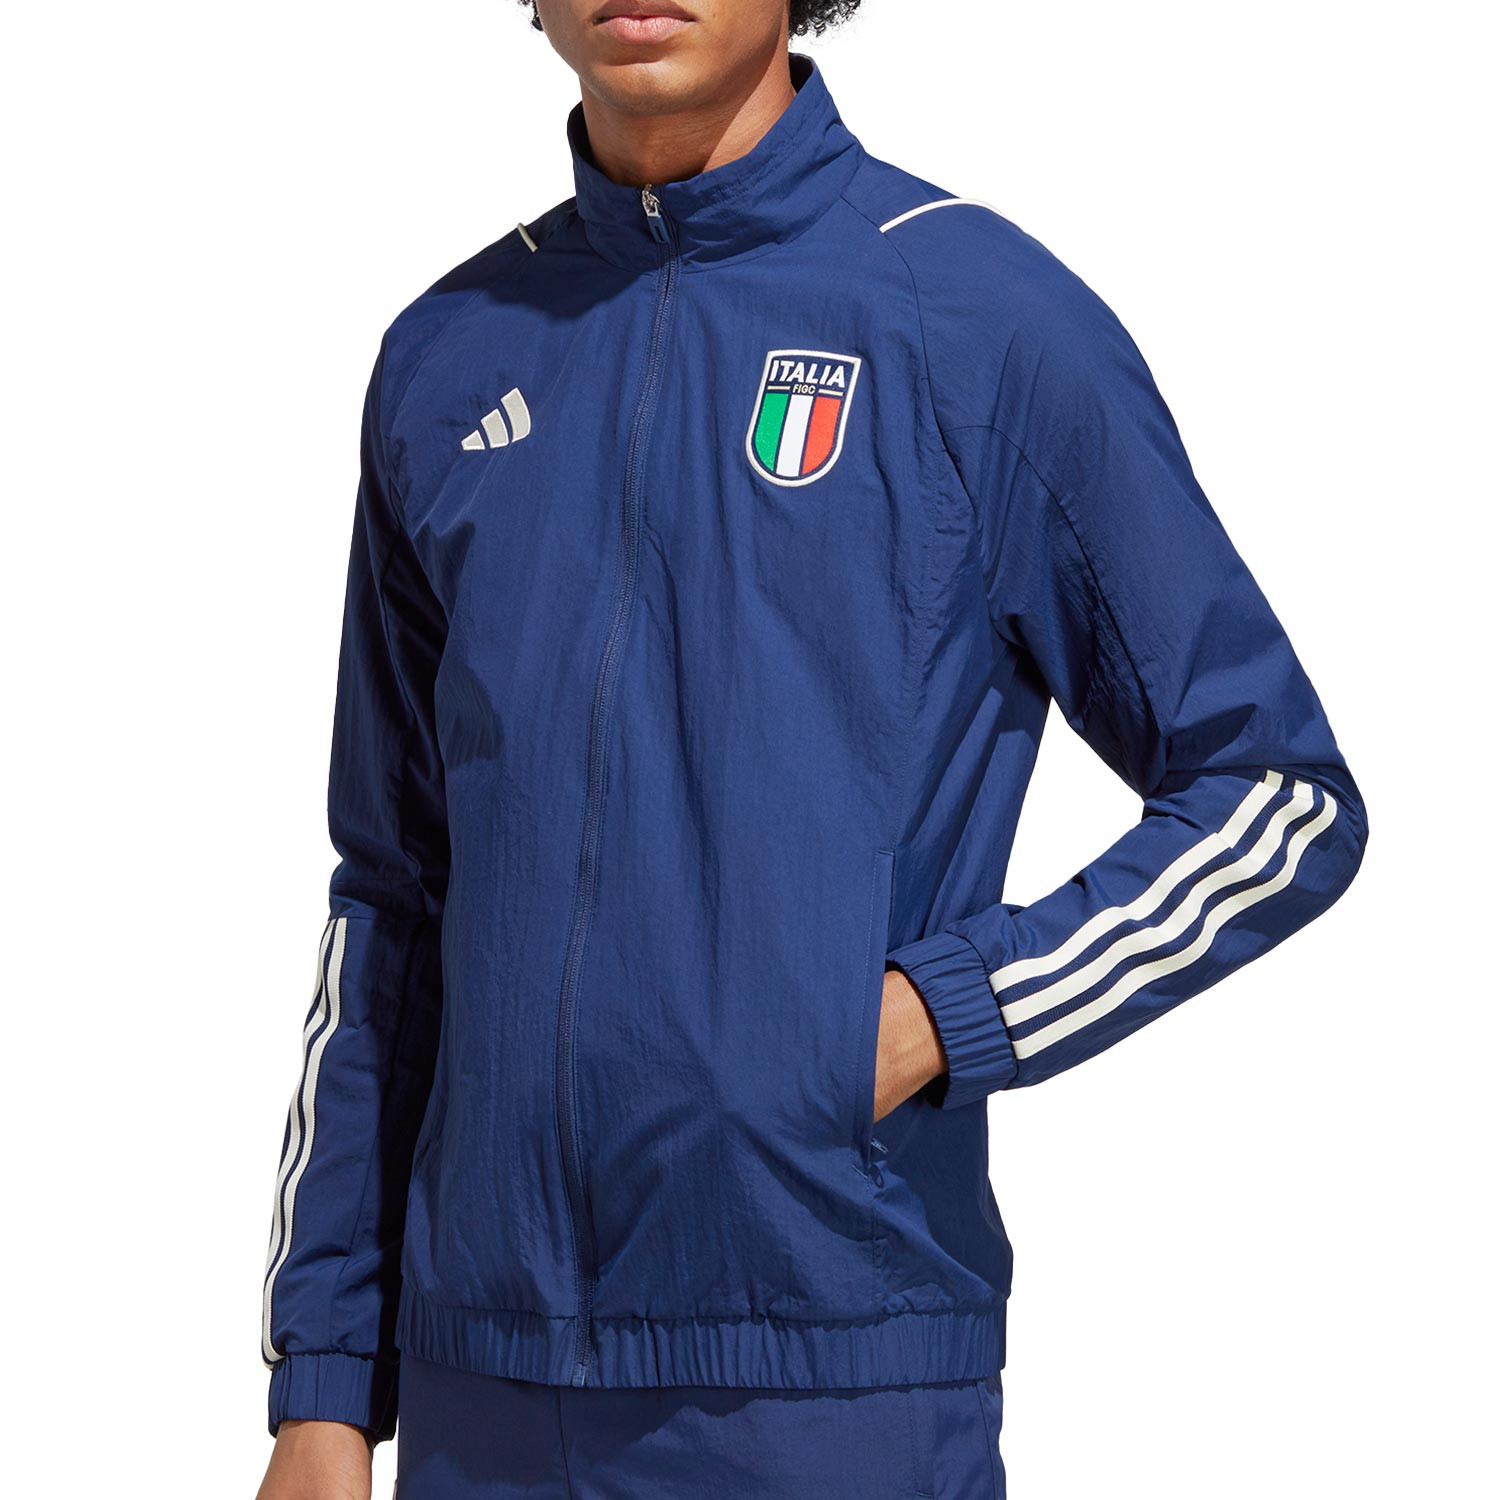 Chaqueta Italia Presentación azul marino | futbolmania